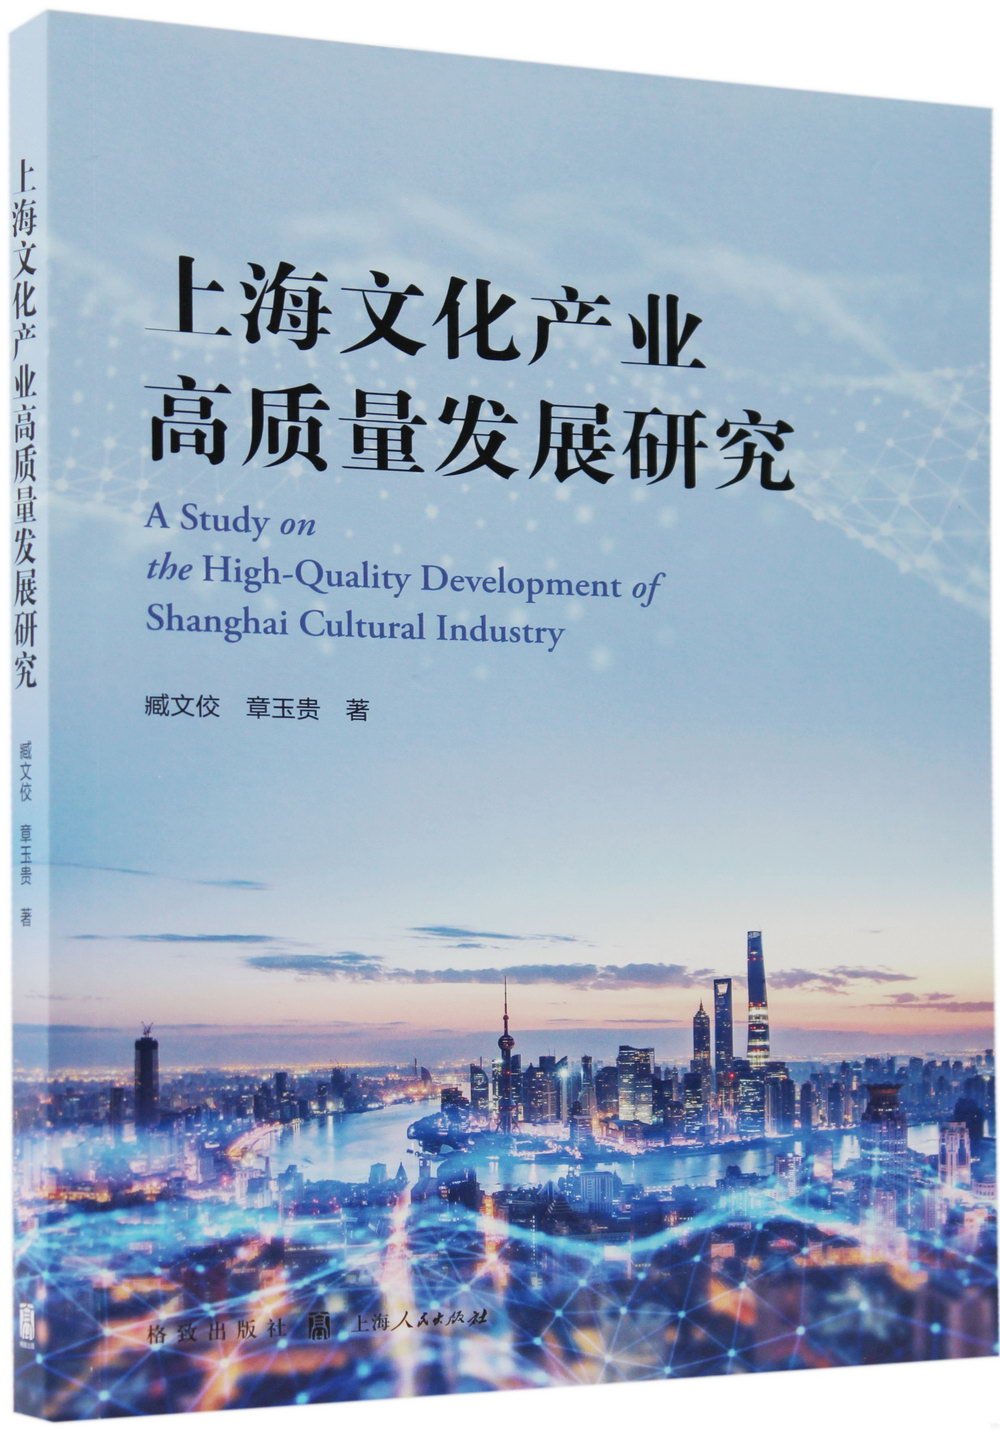 上海文化產業高質量發展研究